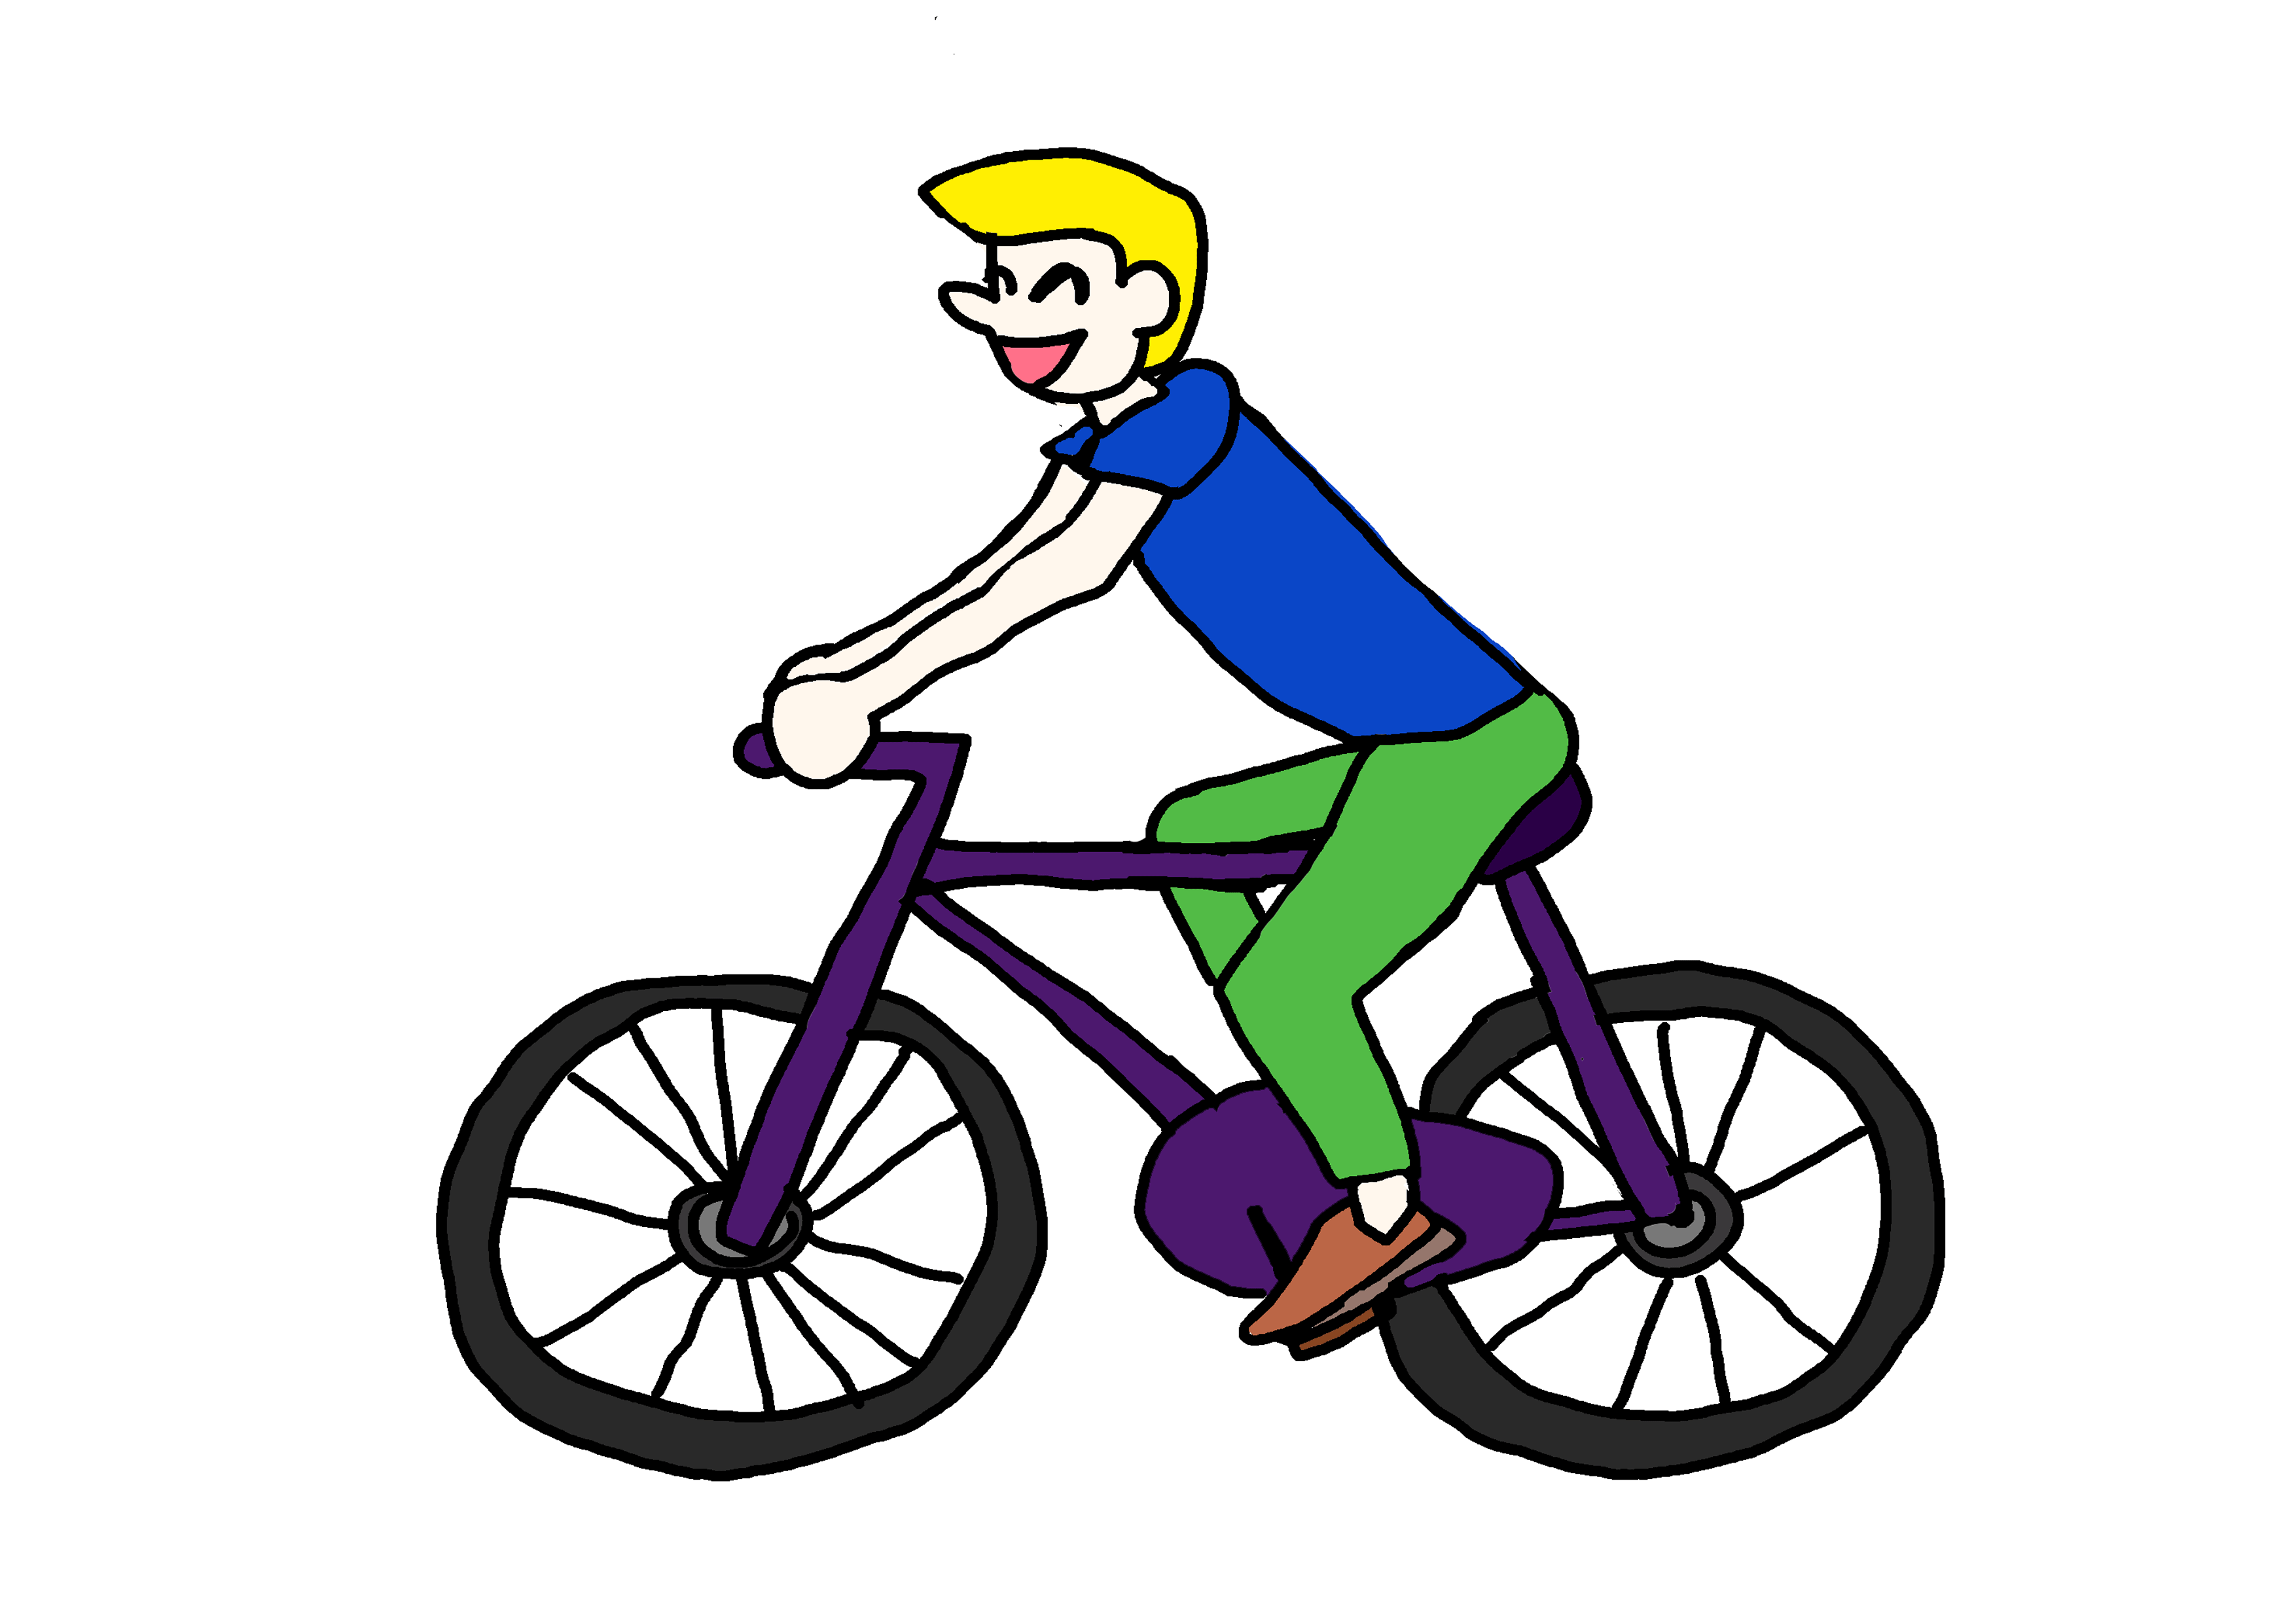 イラスト無料素材 自転車に乗る にほんご教師ピック